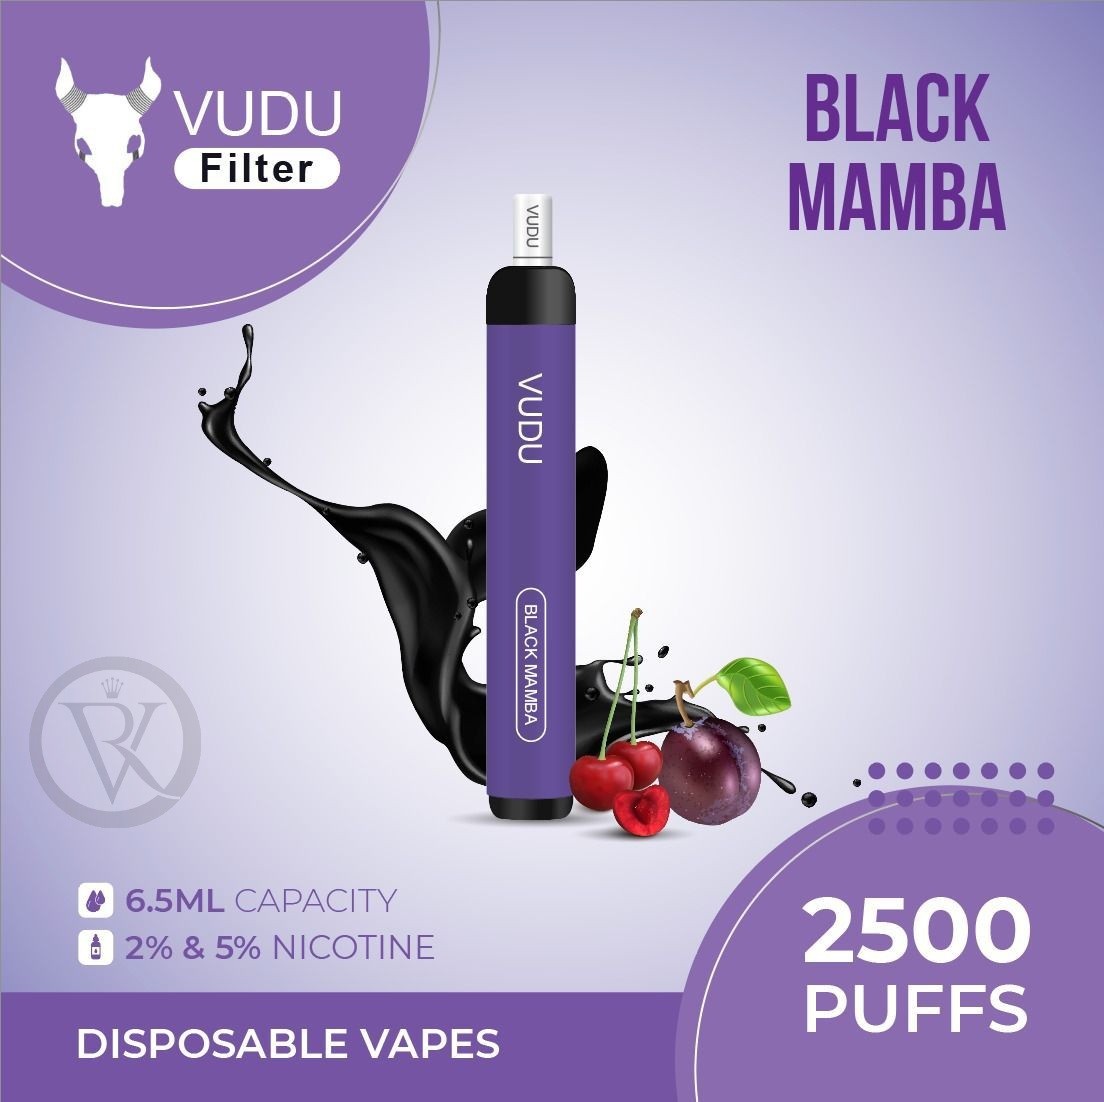 VUDU Filter Disposable 2500 Puffs- Black Mamba